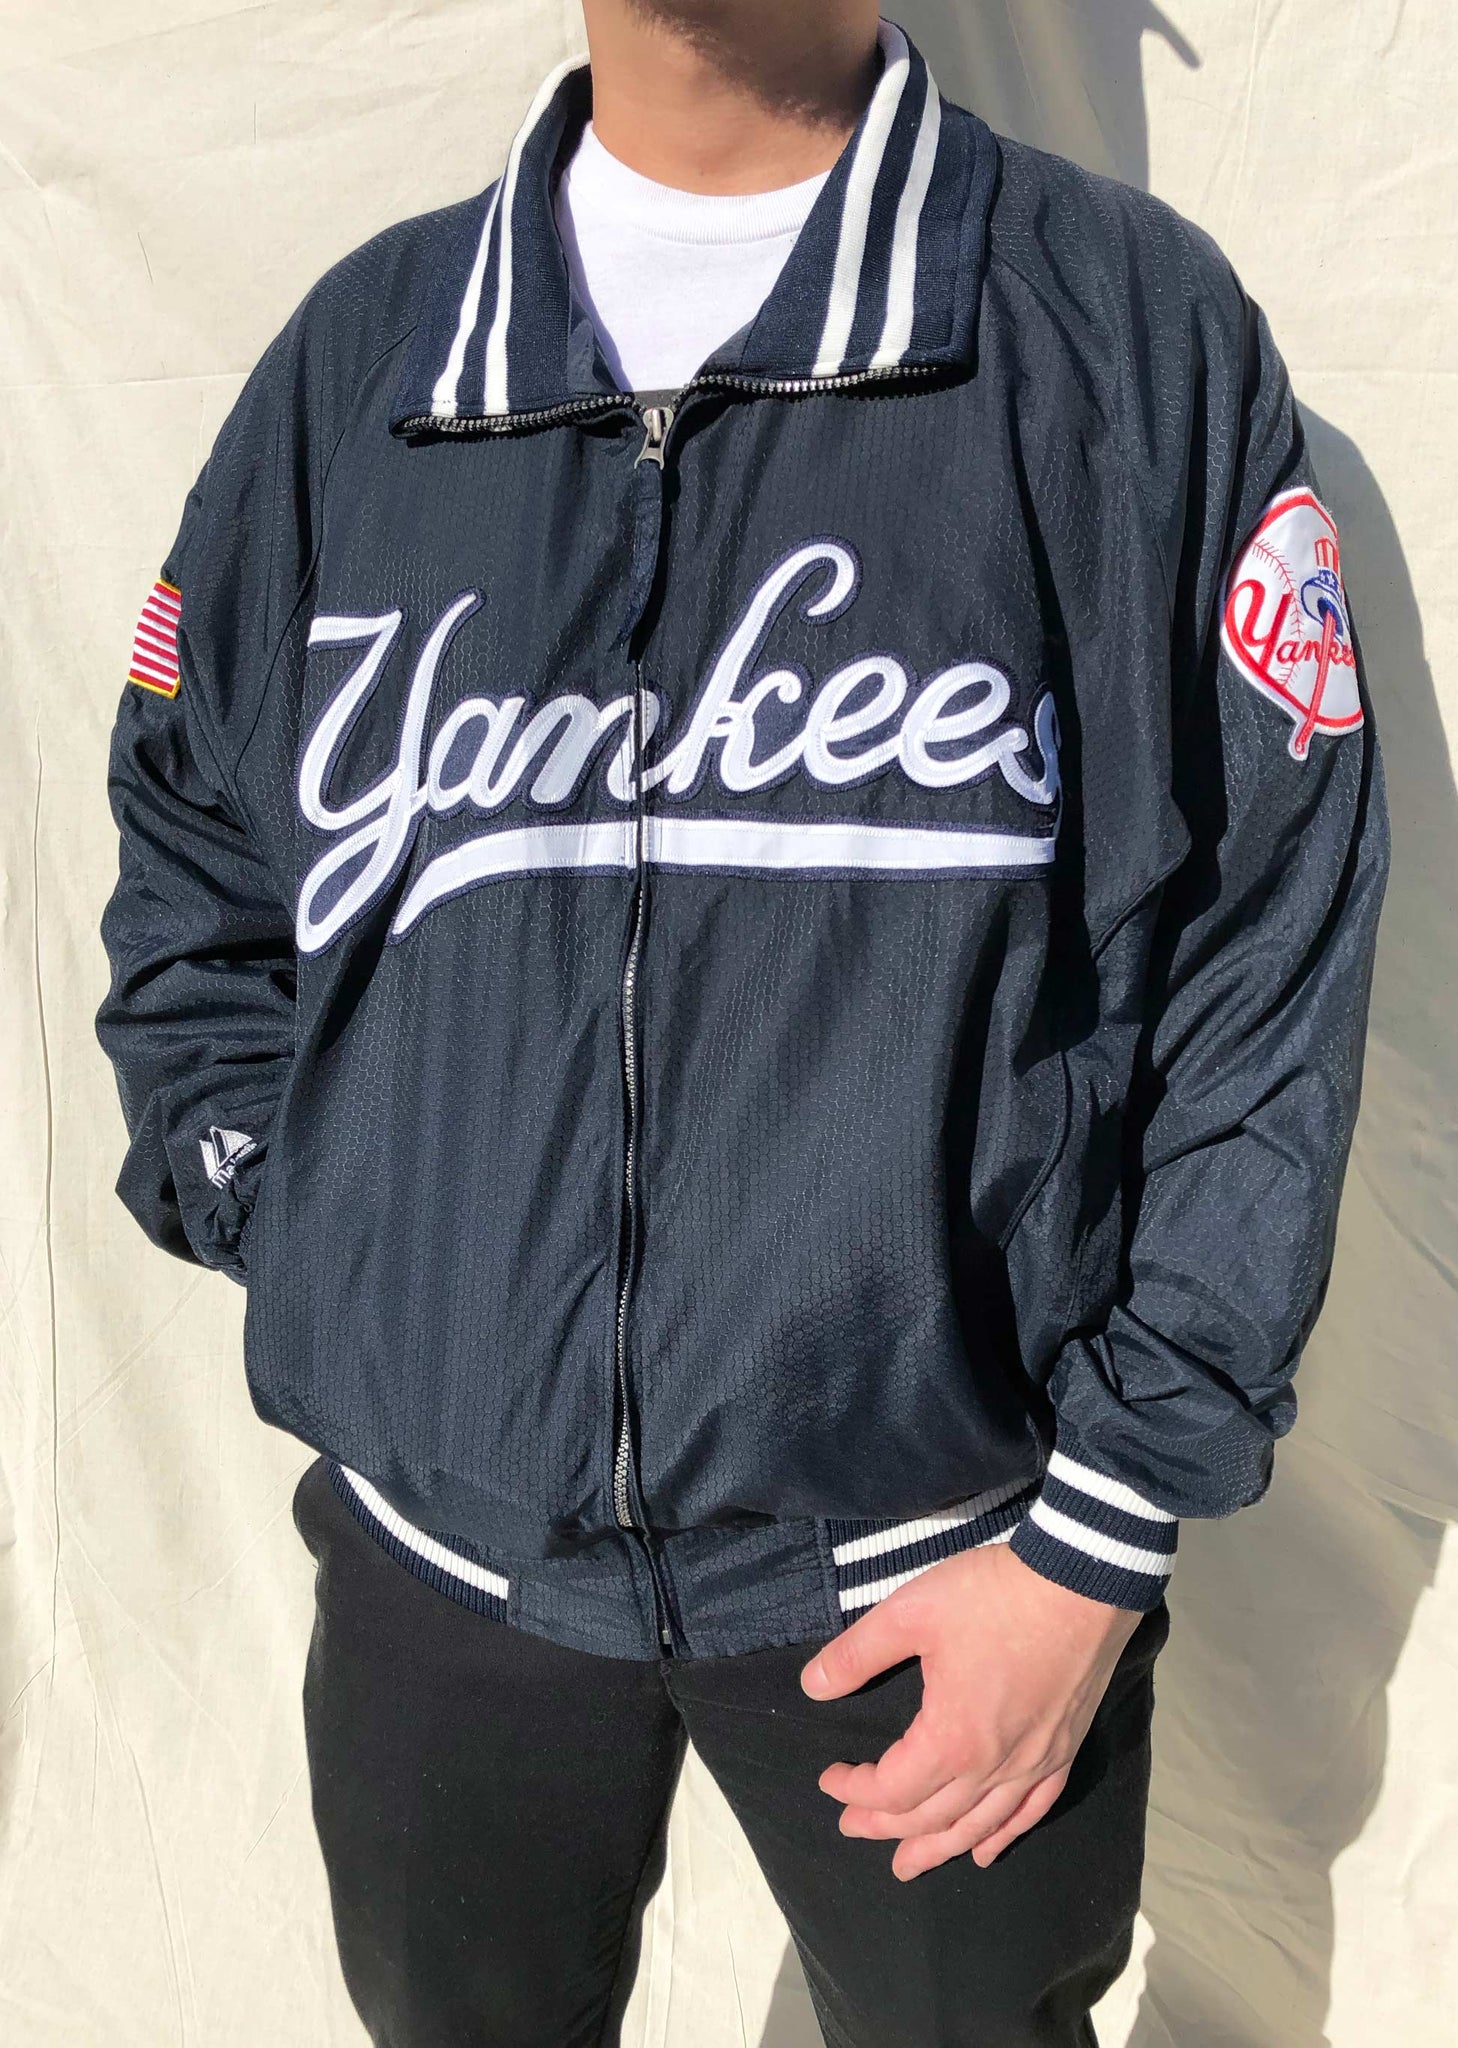 New York Yankees Jacket, Yankees Jackets, MLB Bomber Jacket